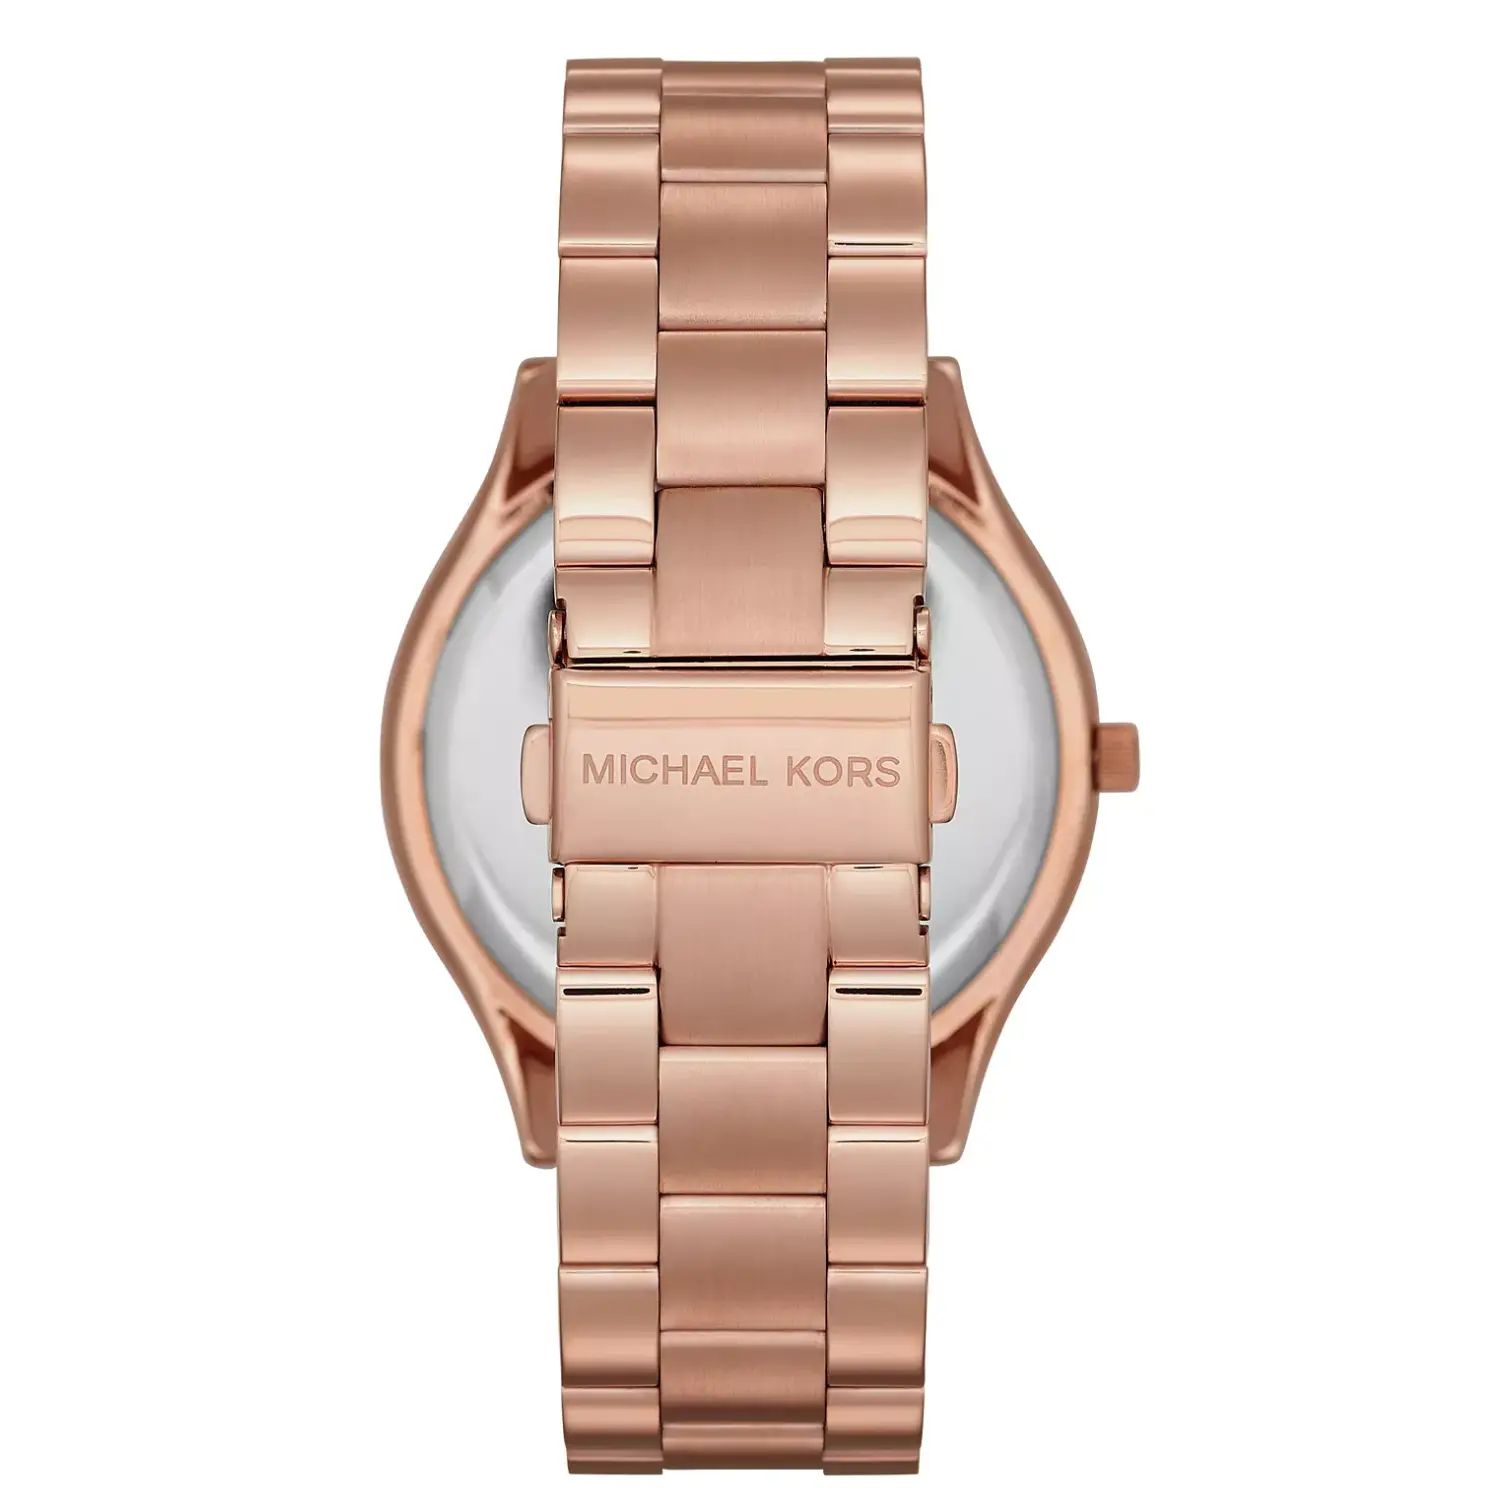 Michael Kors Unisex Slim Runway Rose Gold-Tone Stainless Steel Bracelet Watch 42mm